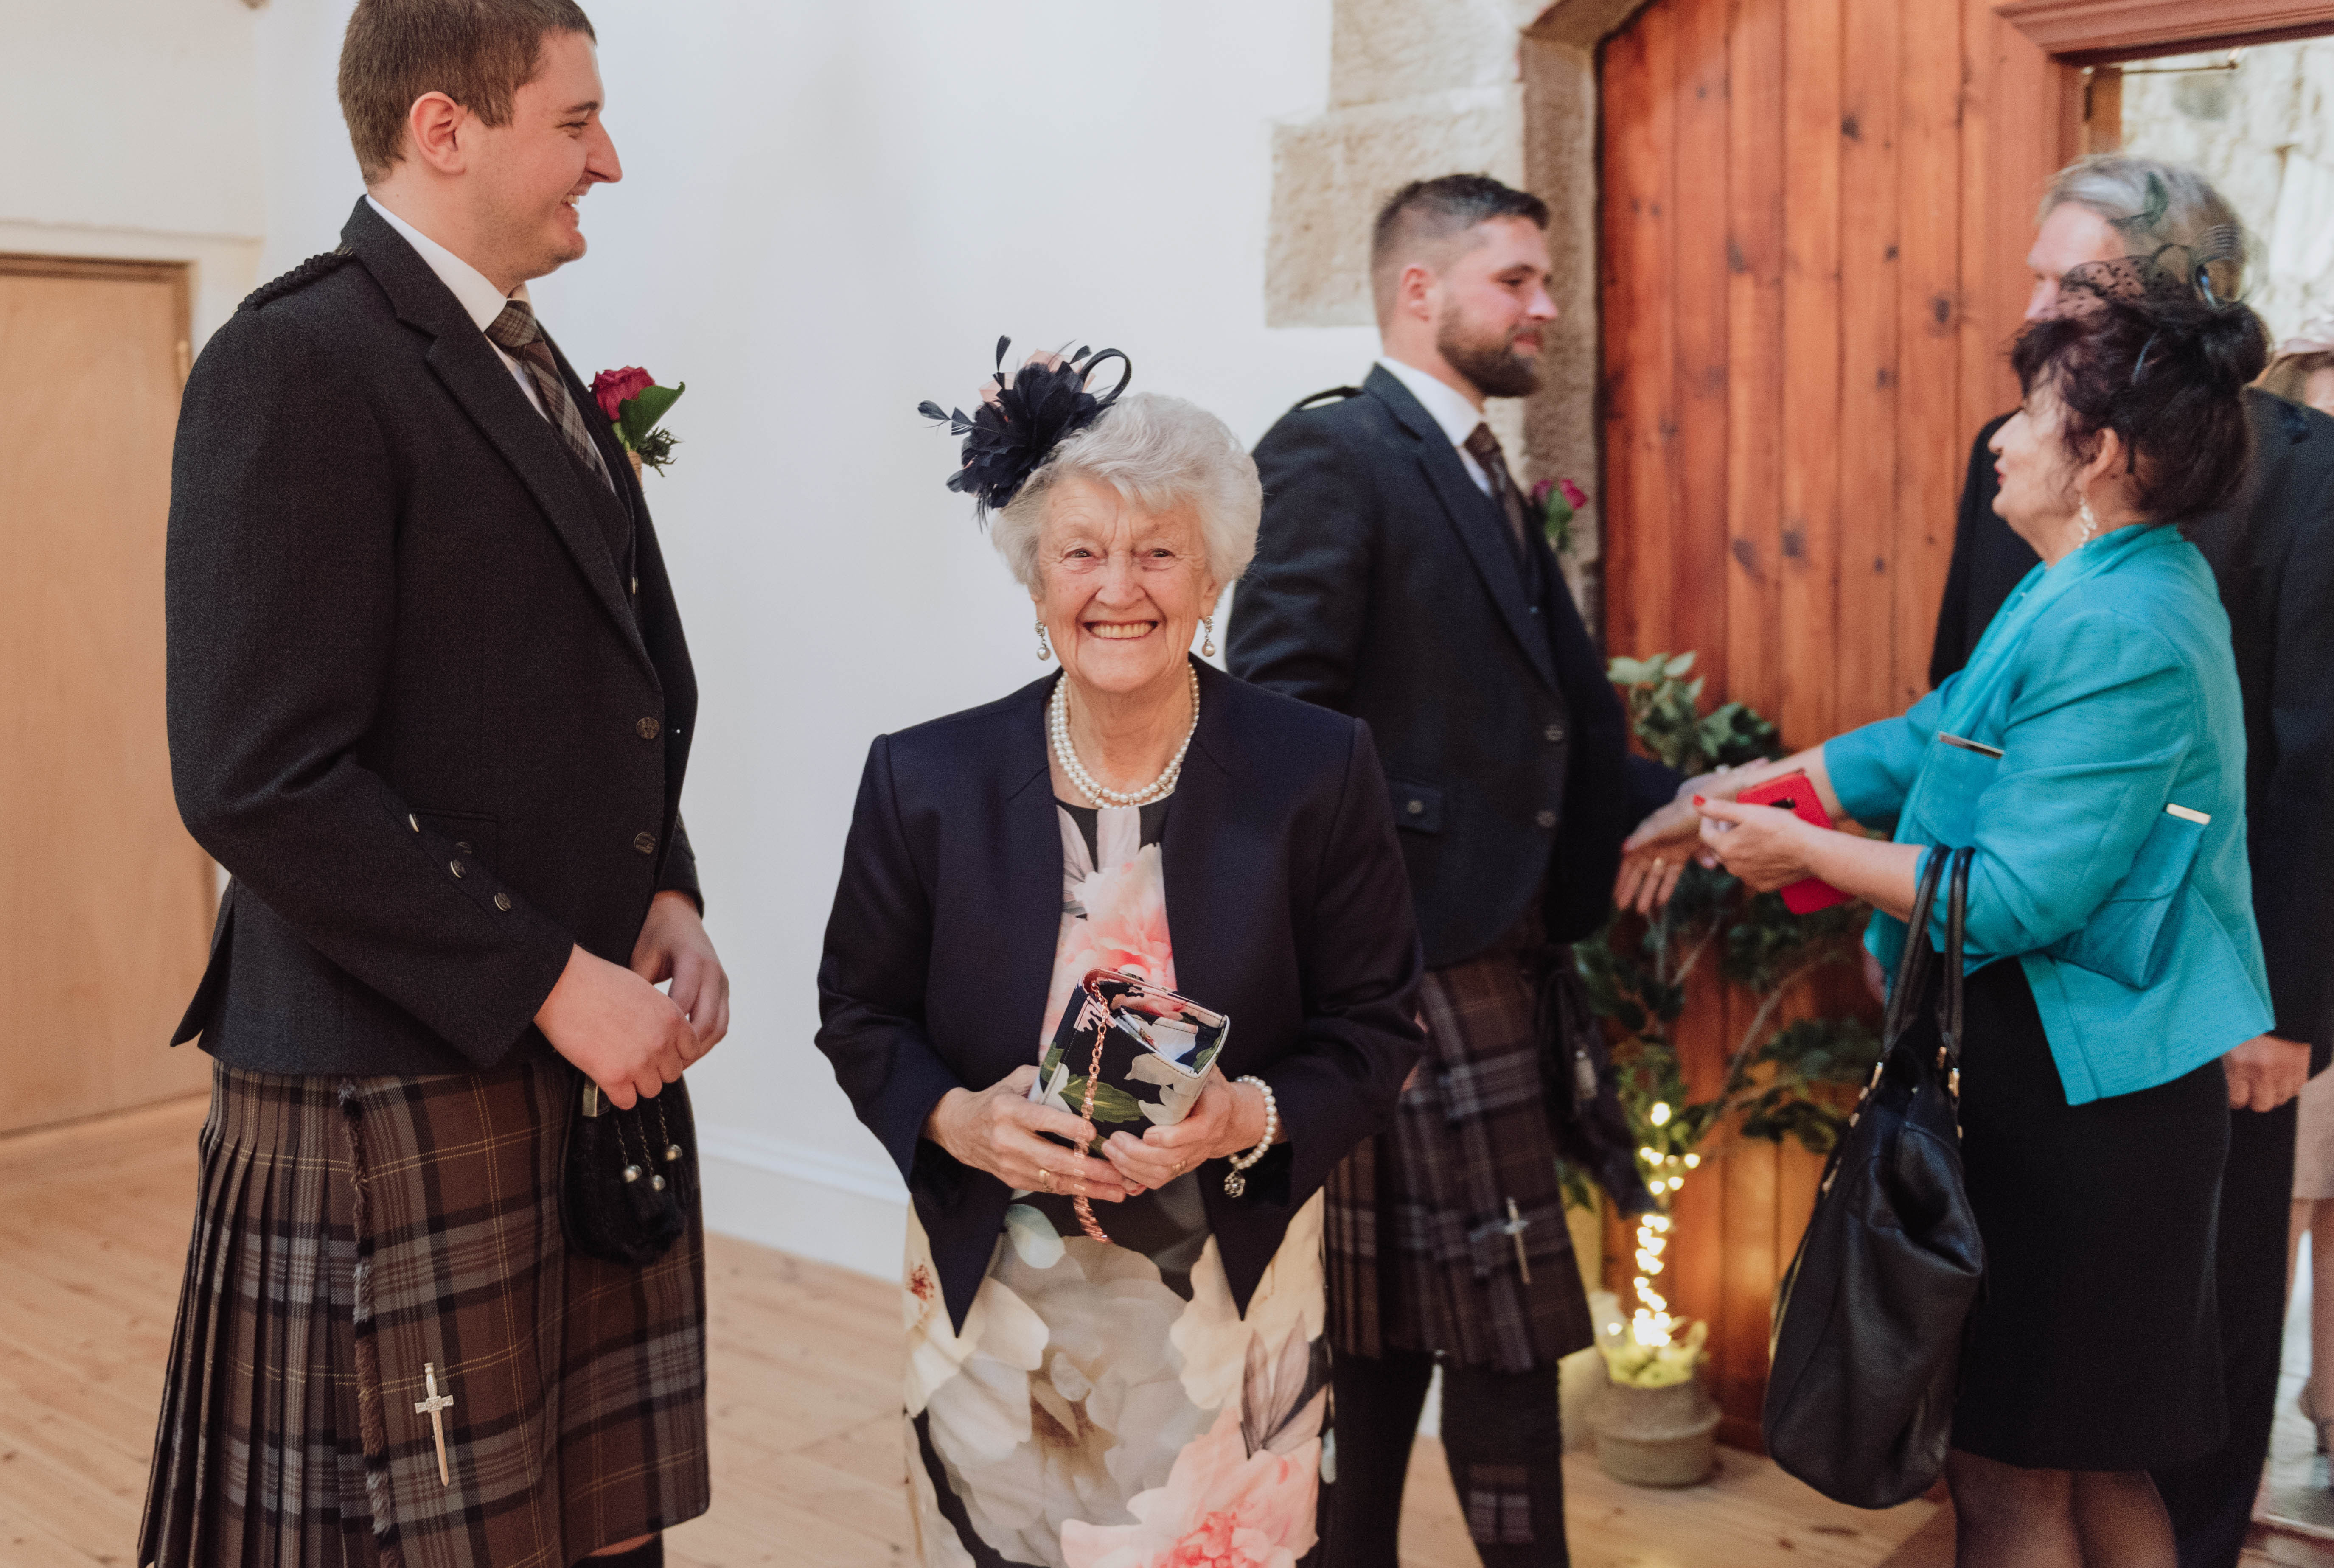 Rustic Scottish Wedding, Wedding Inspo, Scottish Bride, Scottish Wedding